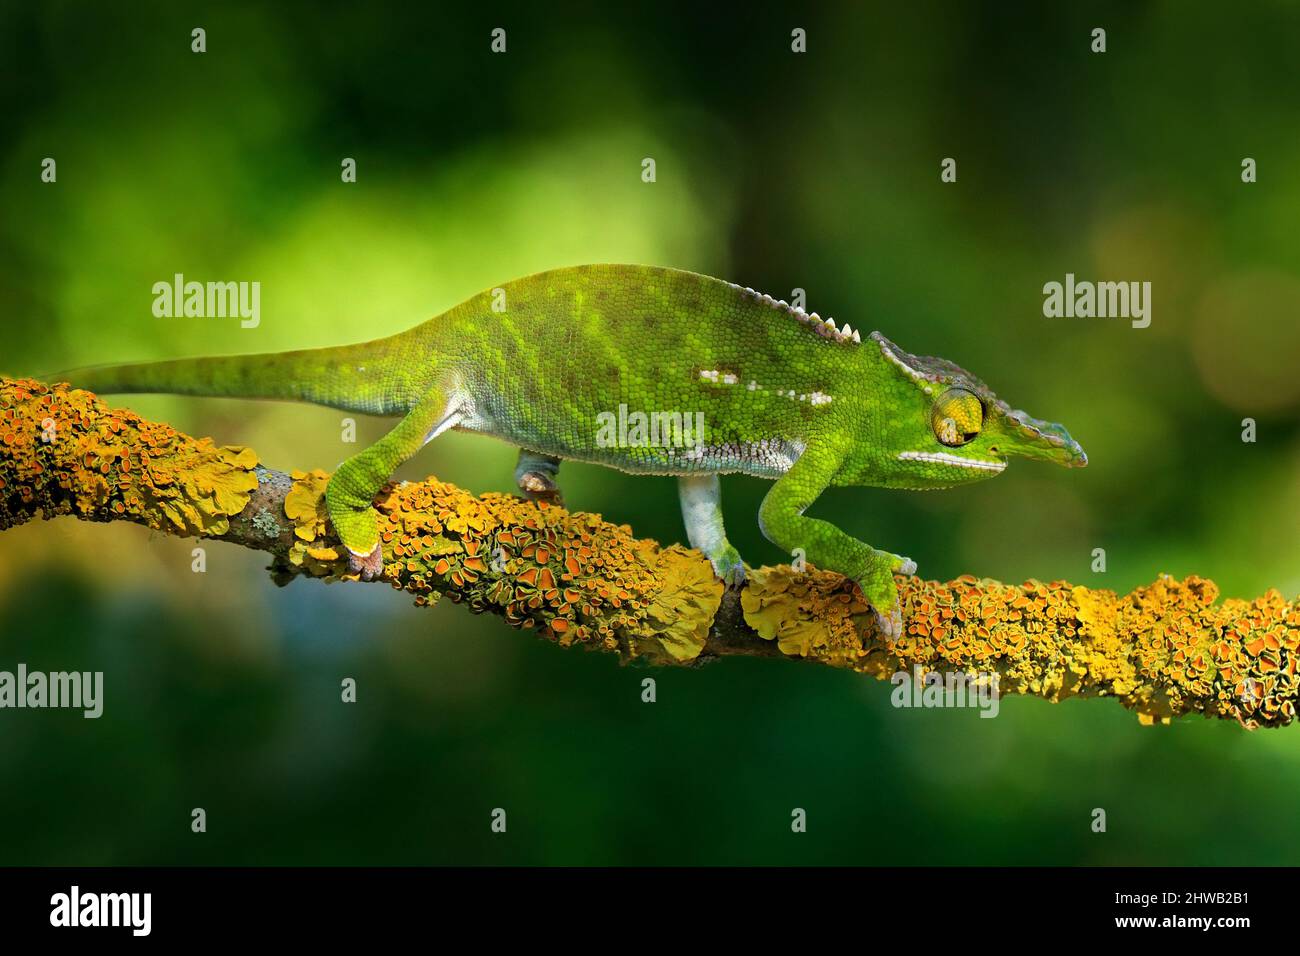 Canopy Wills Chamäleon, Furcifer willsii, sitzt auf dem Ast in Wald Lebensraum. Exotisch schönes endemisches grünes Reptil mit langem Schwanz aus Madagaskar Stockfoto